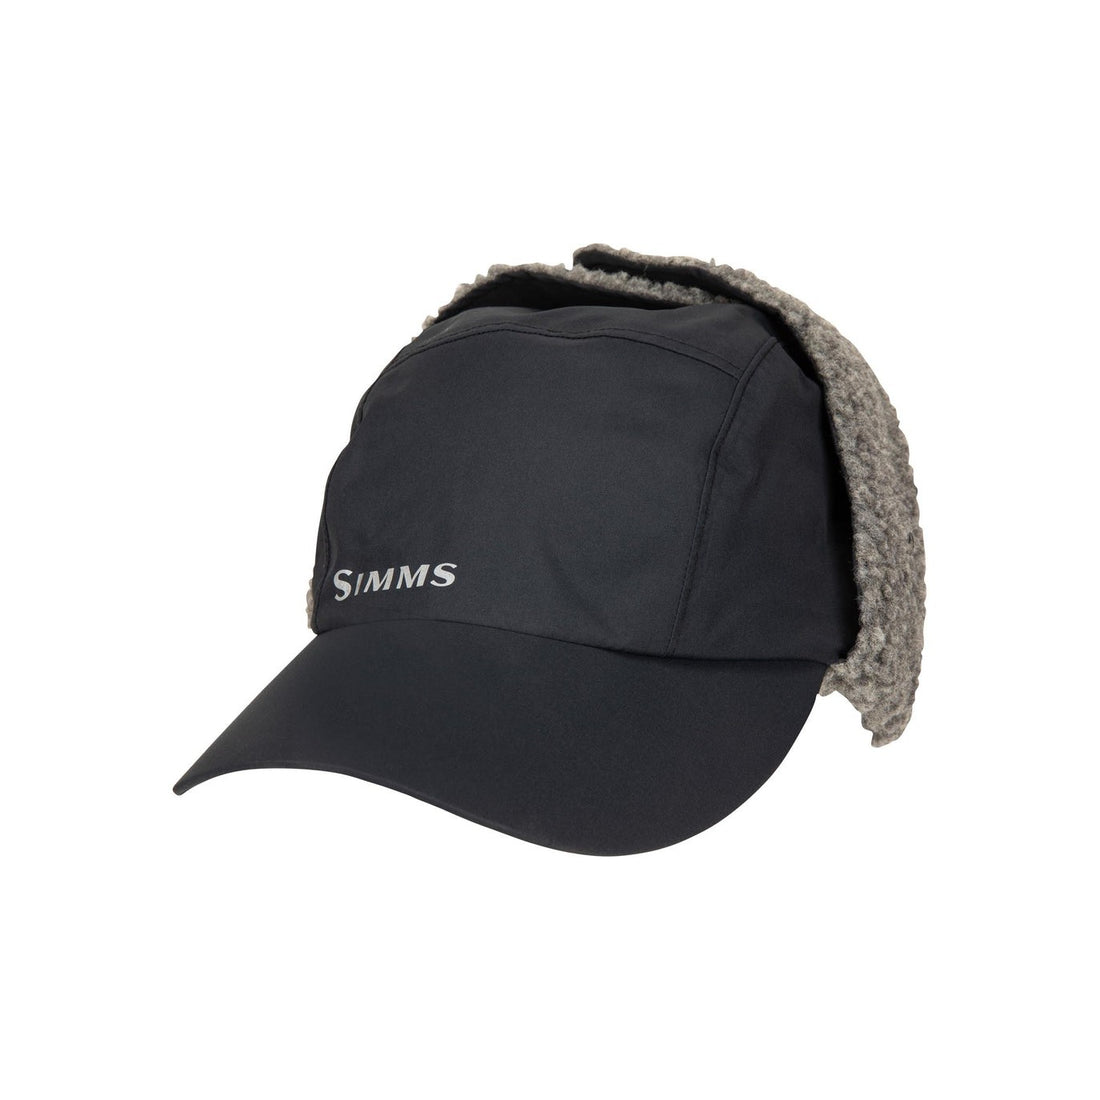 Pike Fishing Hat Snapback Baseball Cap Fish Hats Gifts for Men Women